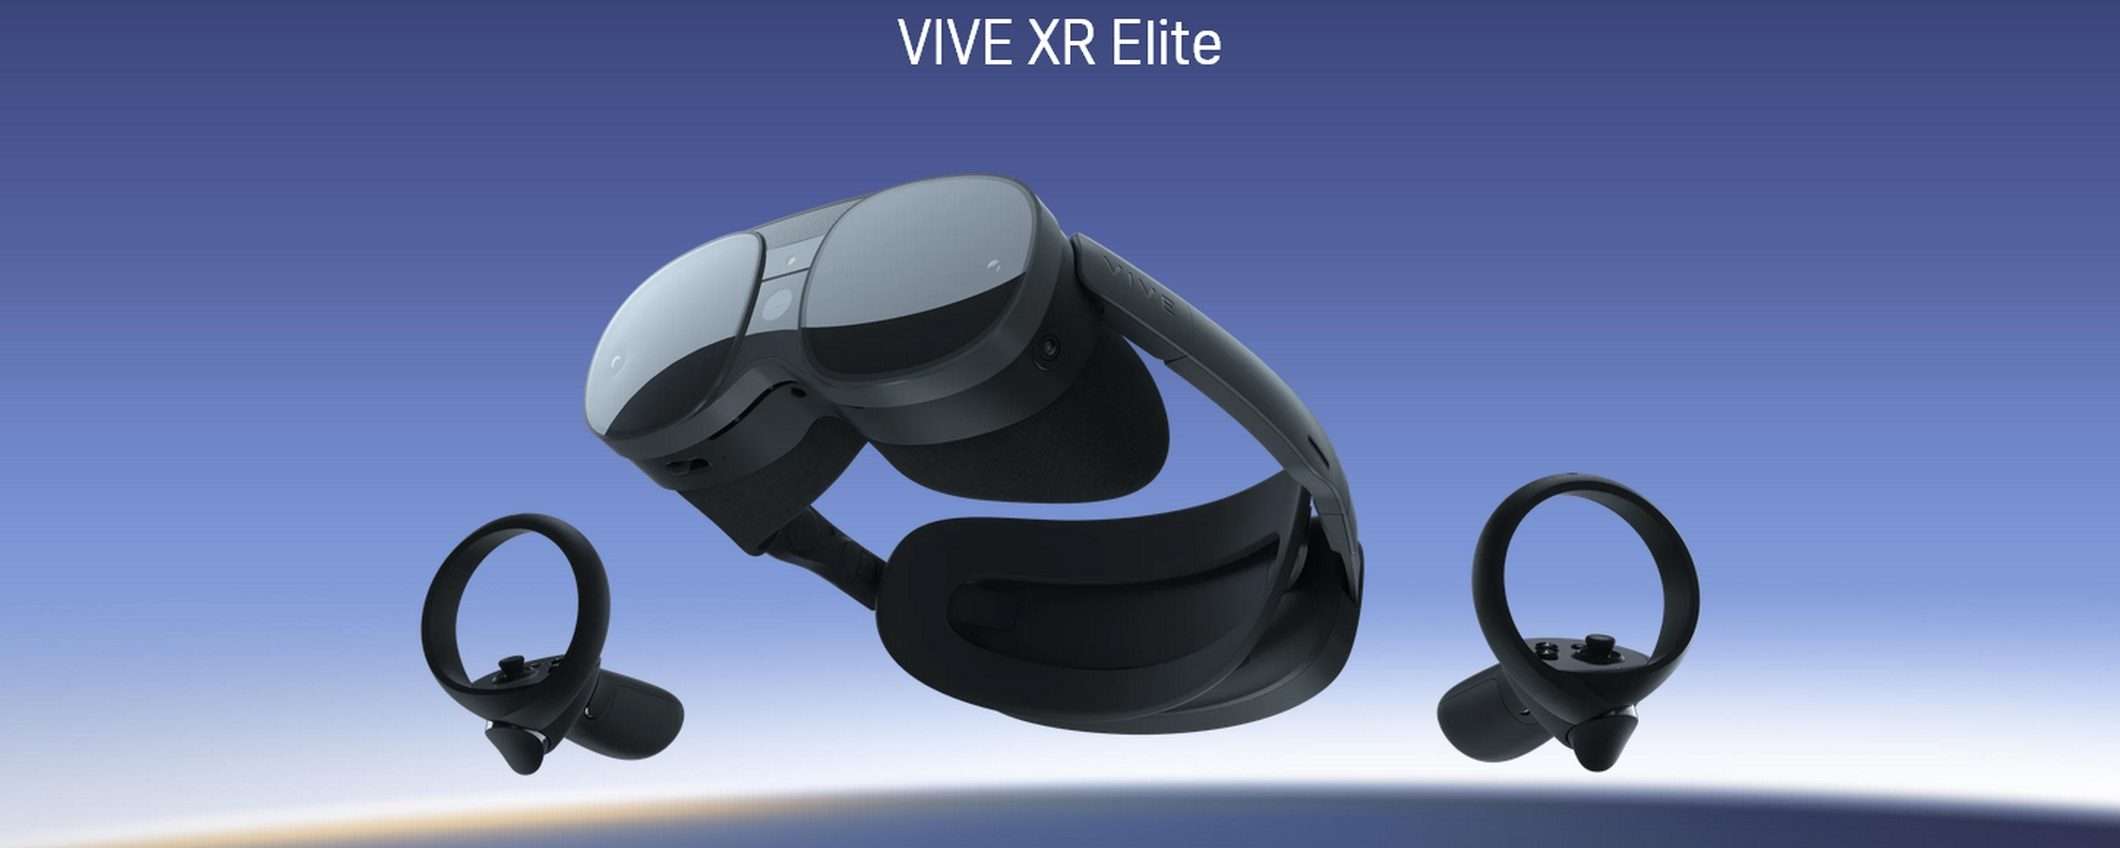 Vive XR Elite: nuovo visore HTC per la realtà mista